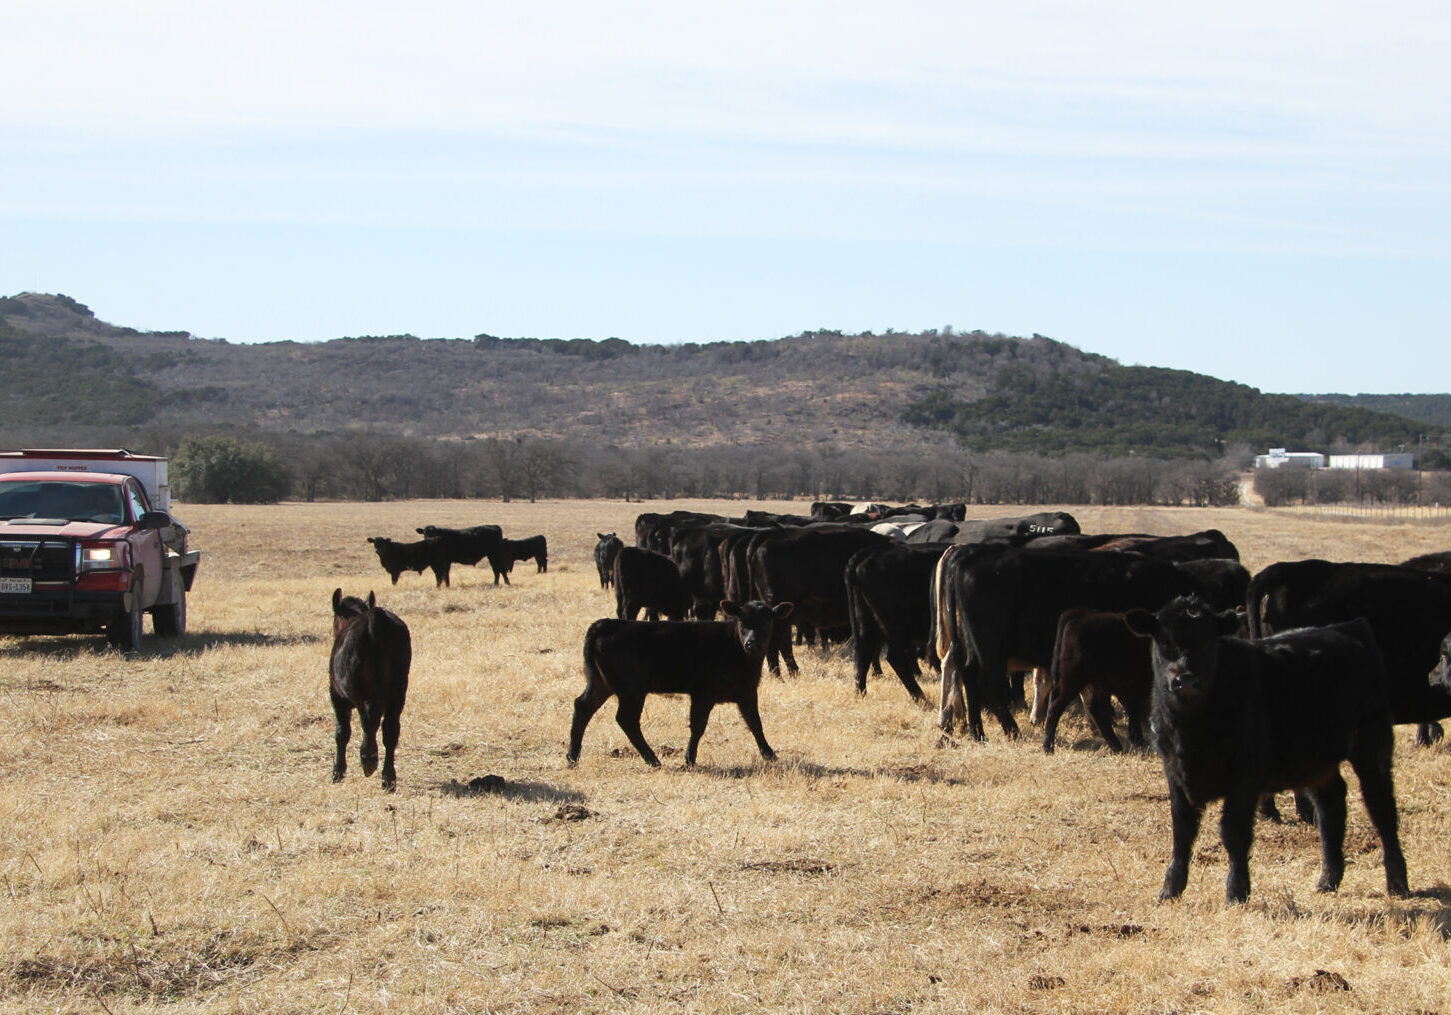 A herd of cattle grazing in an open field.